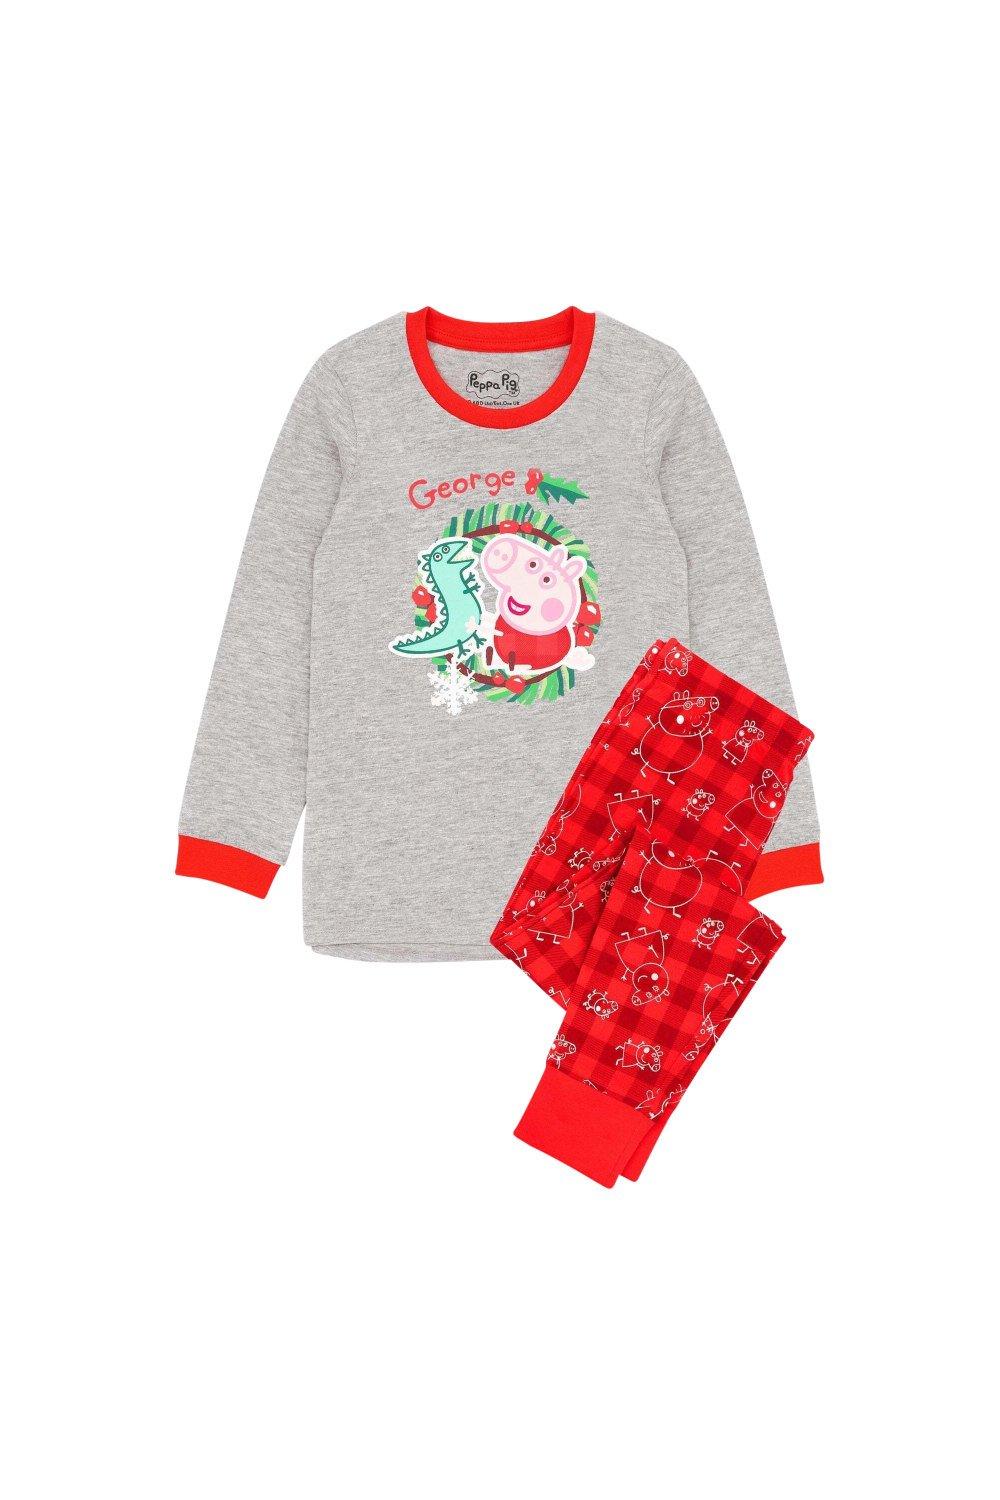 George Pig Christmas Pyjama Set